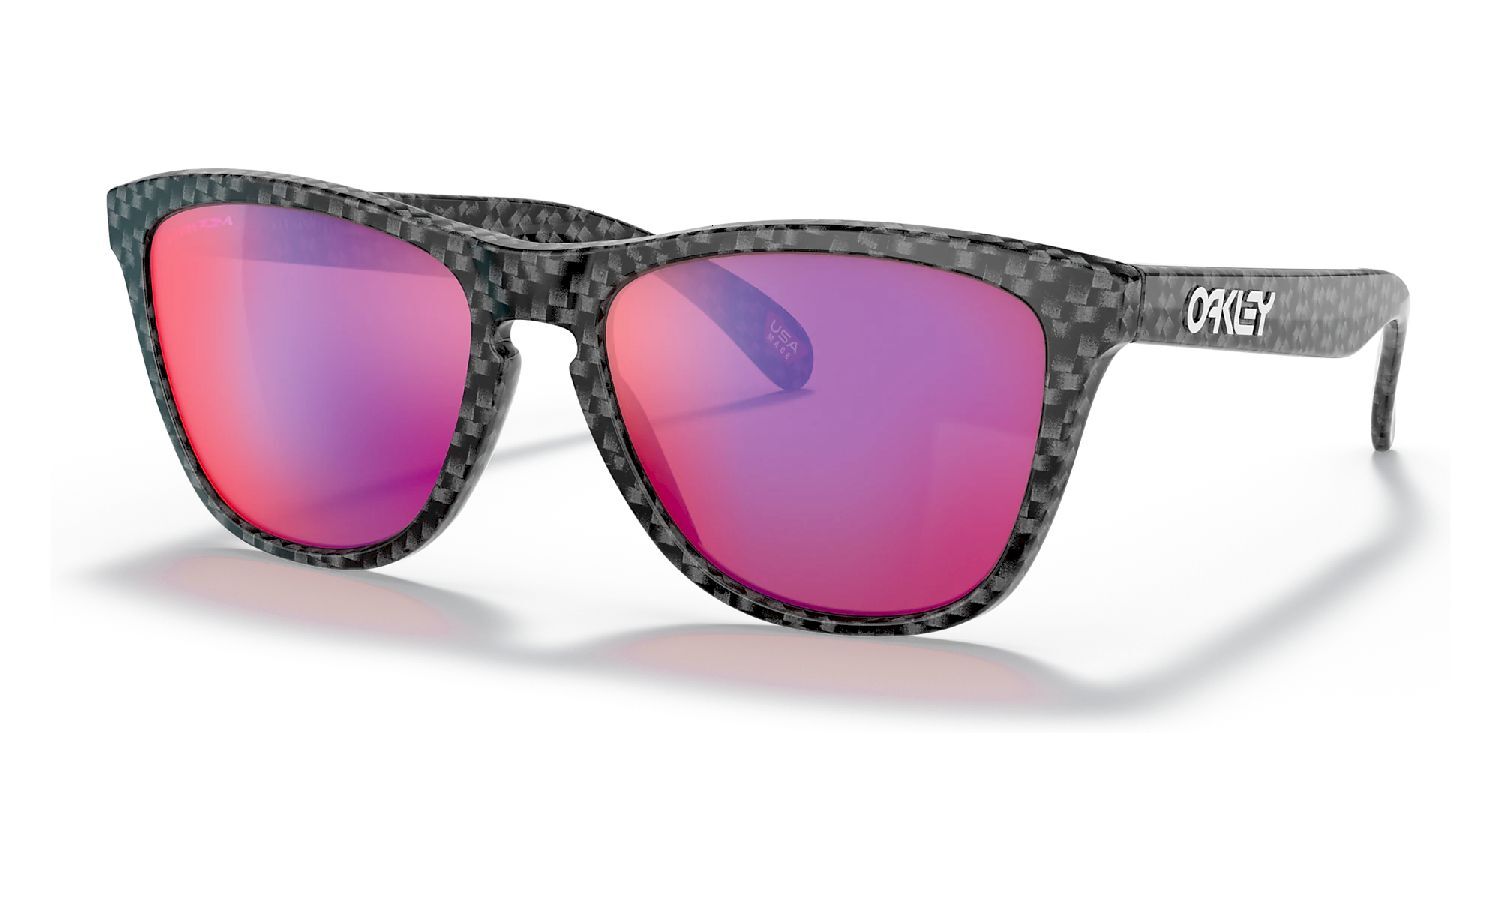 Oakley Frogskins - Sunglasses